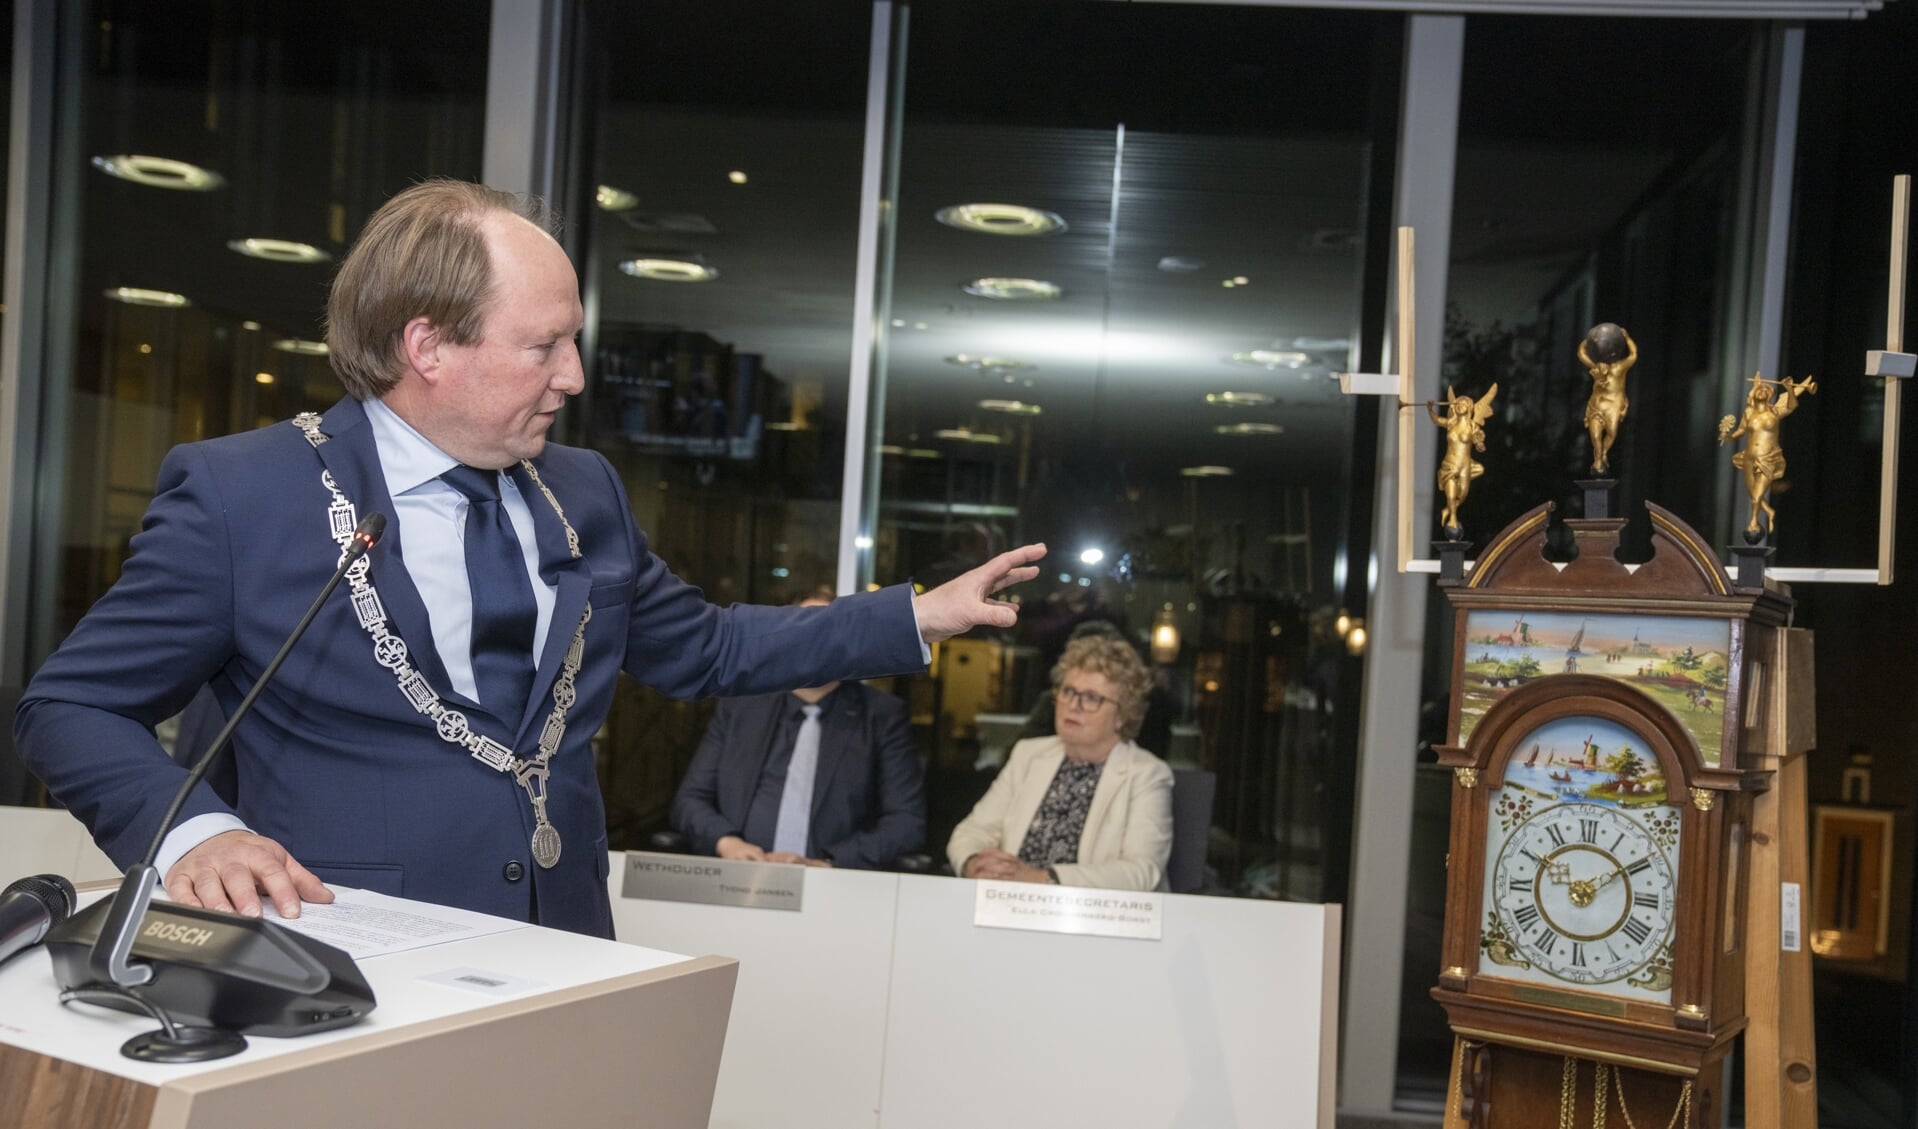 Burgemeester Van der Loo gaf zwijndrecht een burgemeestersklok cadeau. Foto: Gemeente Zwijndrecht / Winsser Visuals